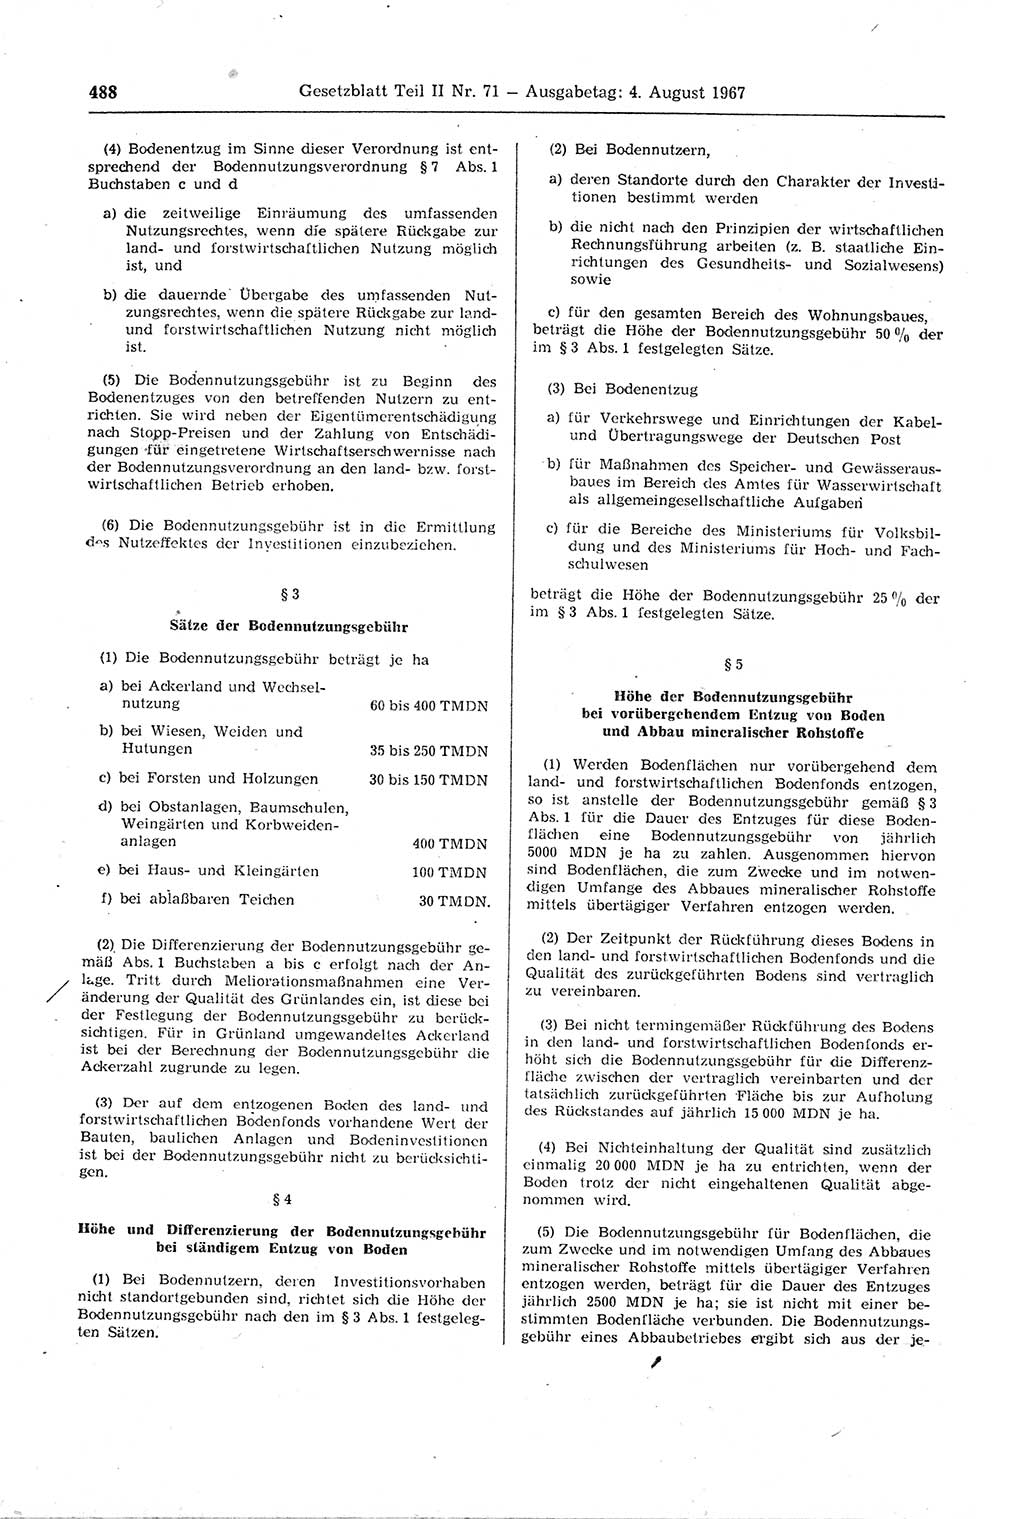 Gesetzblatt (GBl.) der Deutschen Demokratischen Republik (DDR) Teil ⅠⅠ 1967, Seite 488 (GBl. DDR ⅠⅠ 1967, S. 488)